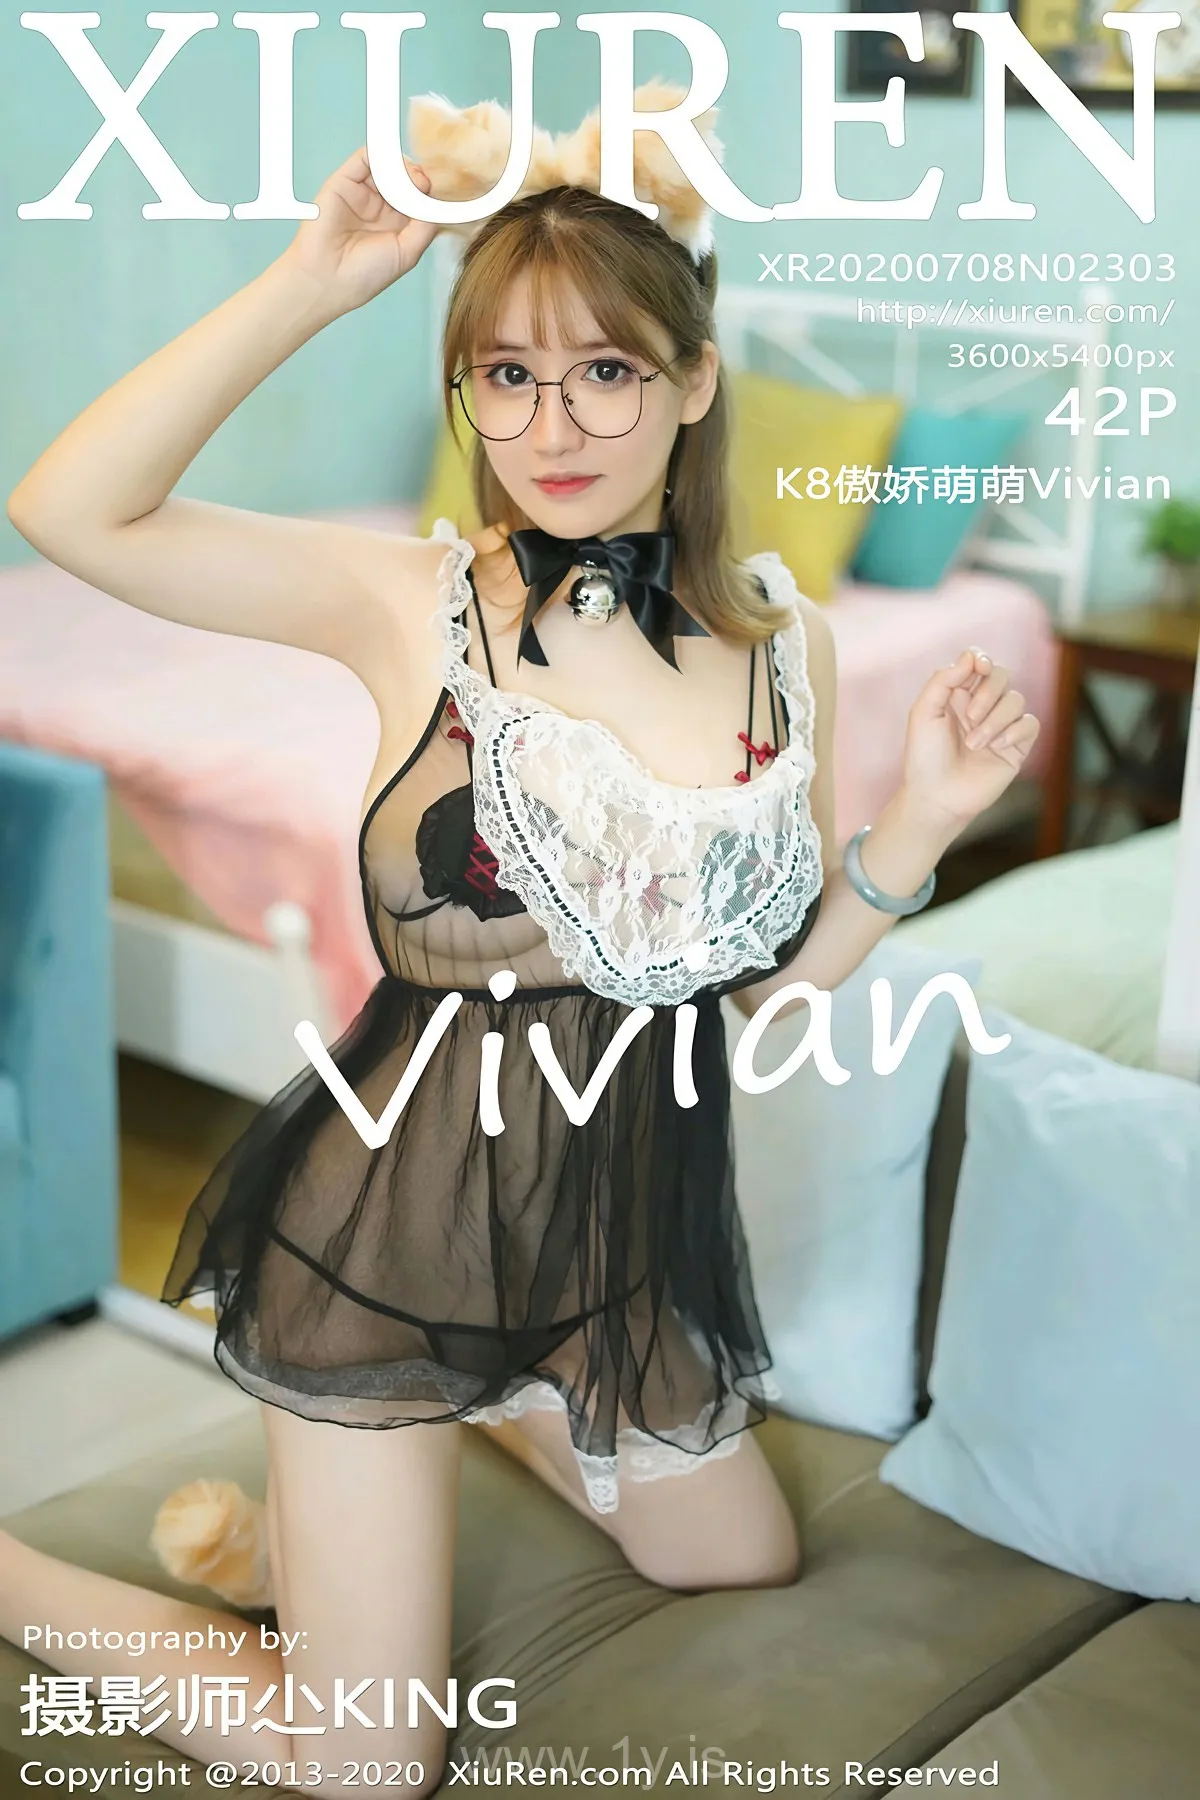 XIUREN(秀人网) NO.2303 Irresistible Asian Angel k8傲娇萌萌vivian